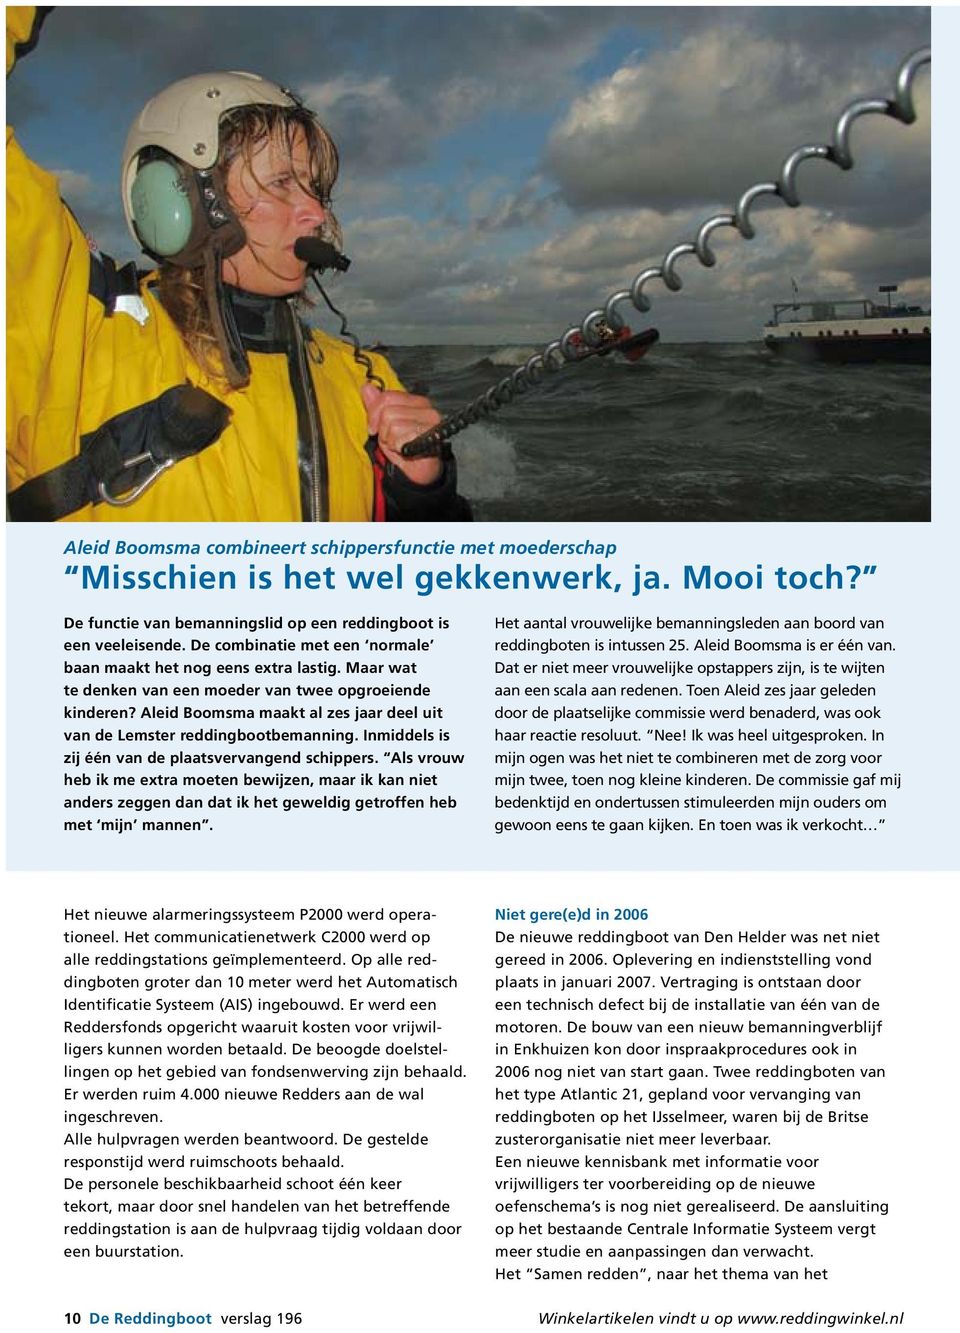 Aleid Boomsma maakt al zes jaar deel uit van de Lemster reddingbootbemanning. Inmiddels is zij één van de plaatsvervangend schippers.